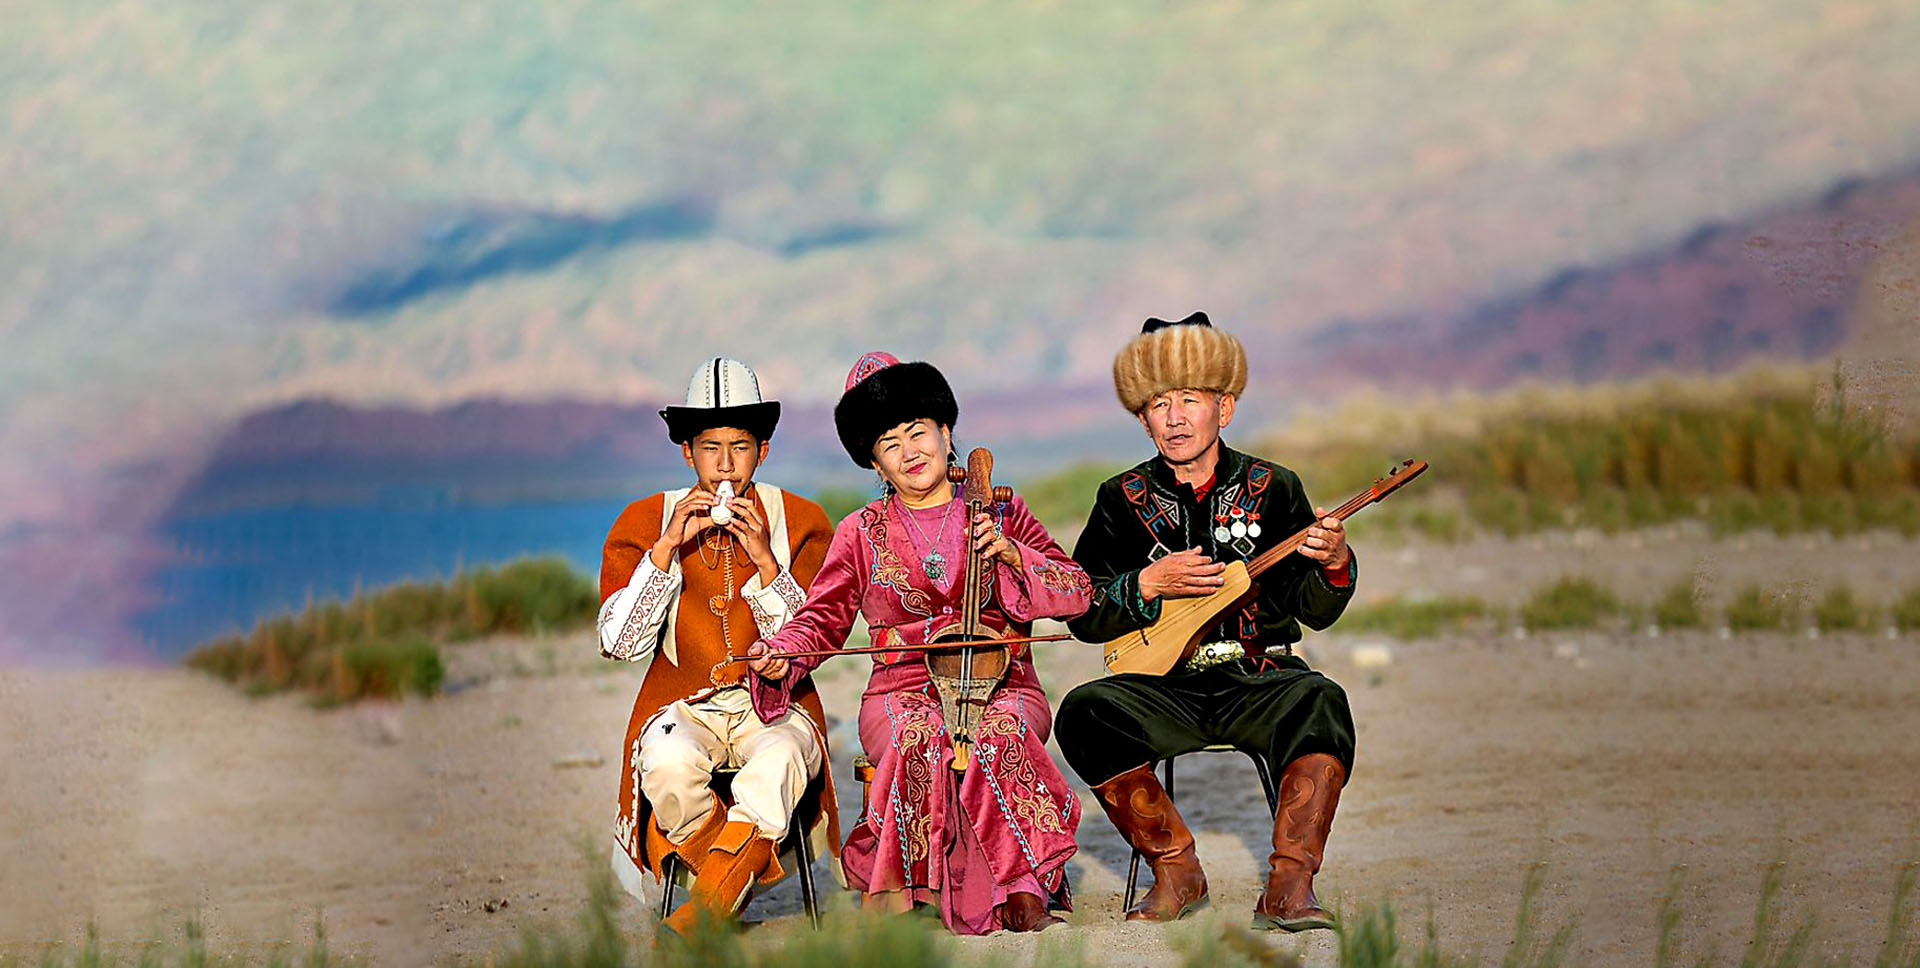 جاذبه های دیدنی قرقیزستان رو می شناسید ؟